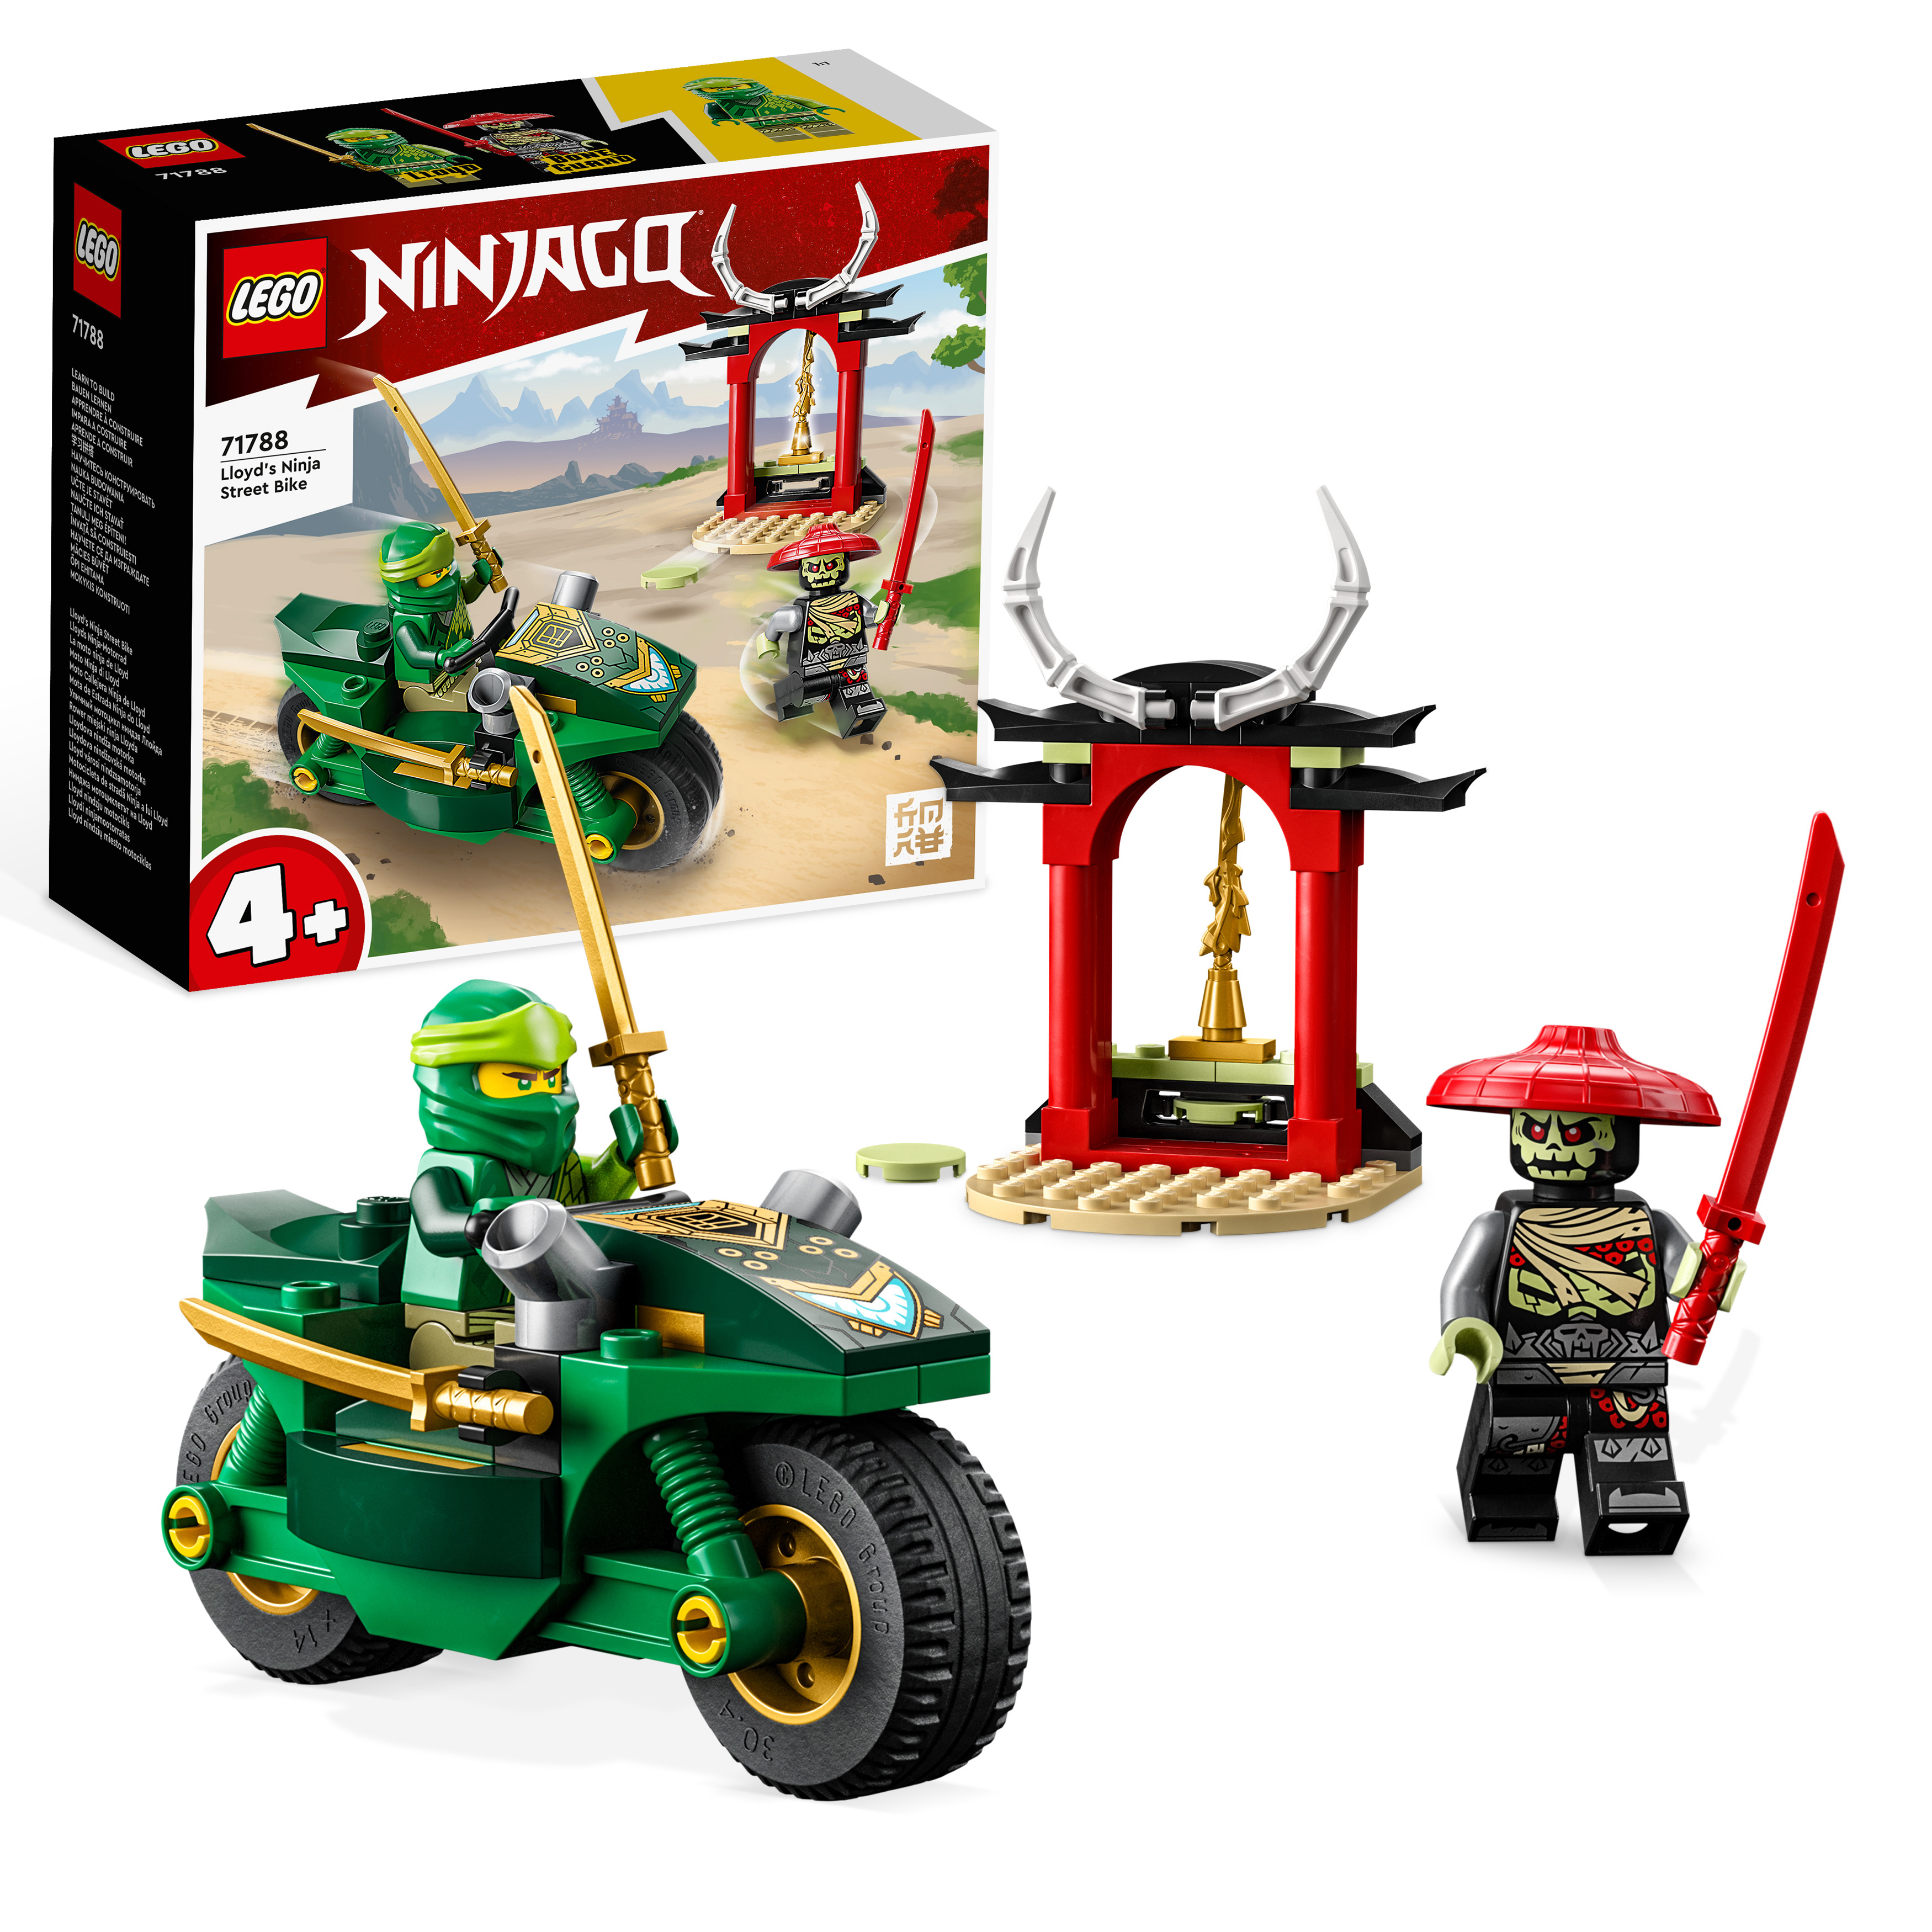 Ninja-Motorrad LEGO Mehrfarbig Lloyds NINJAGO Bausatz, 71788